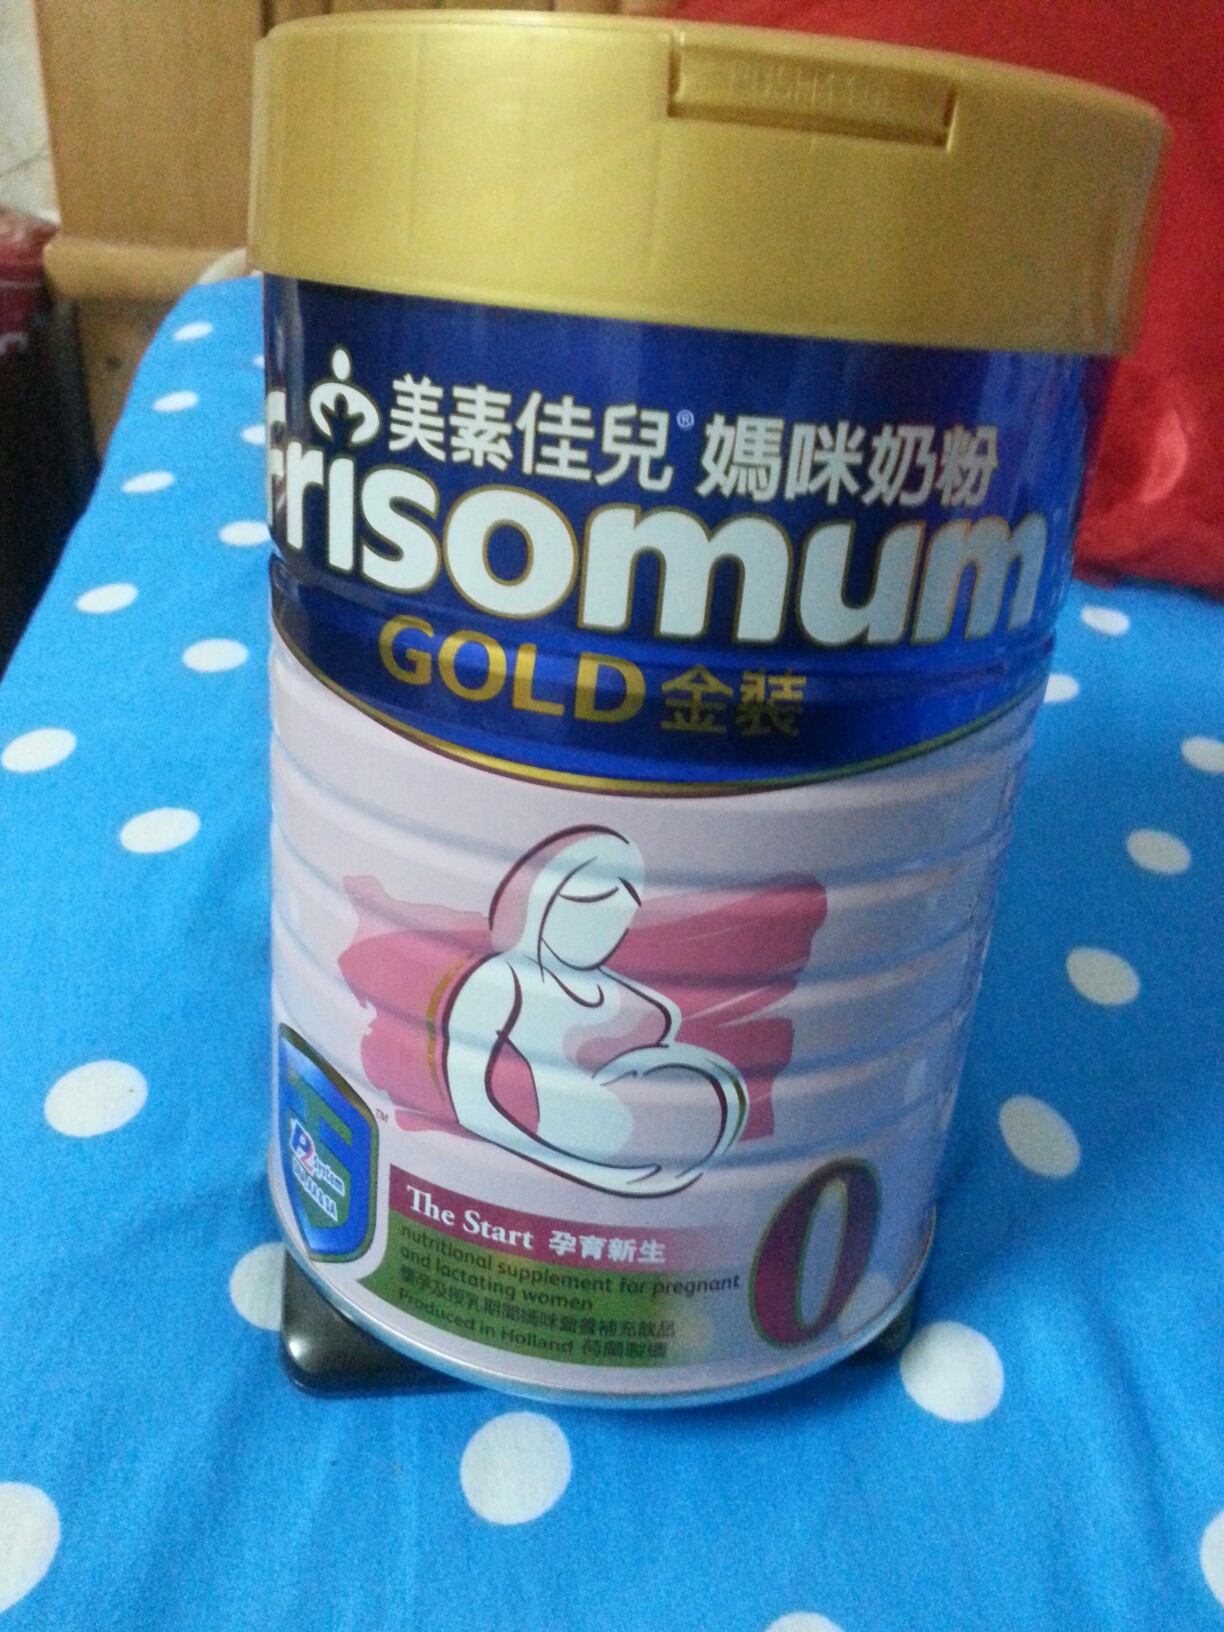 老公在香港给买的妈咪奶粉!你也来干杯!给朋友